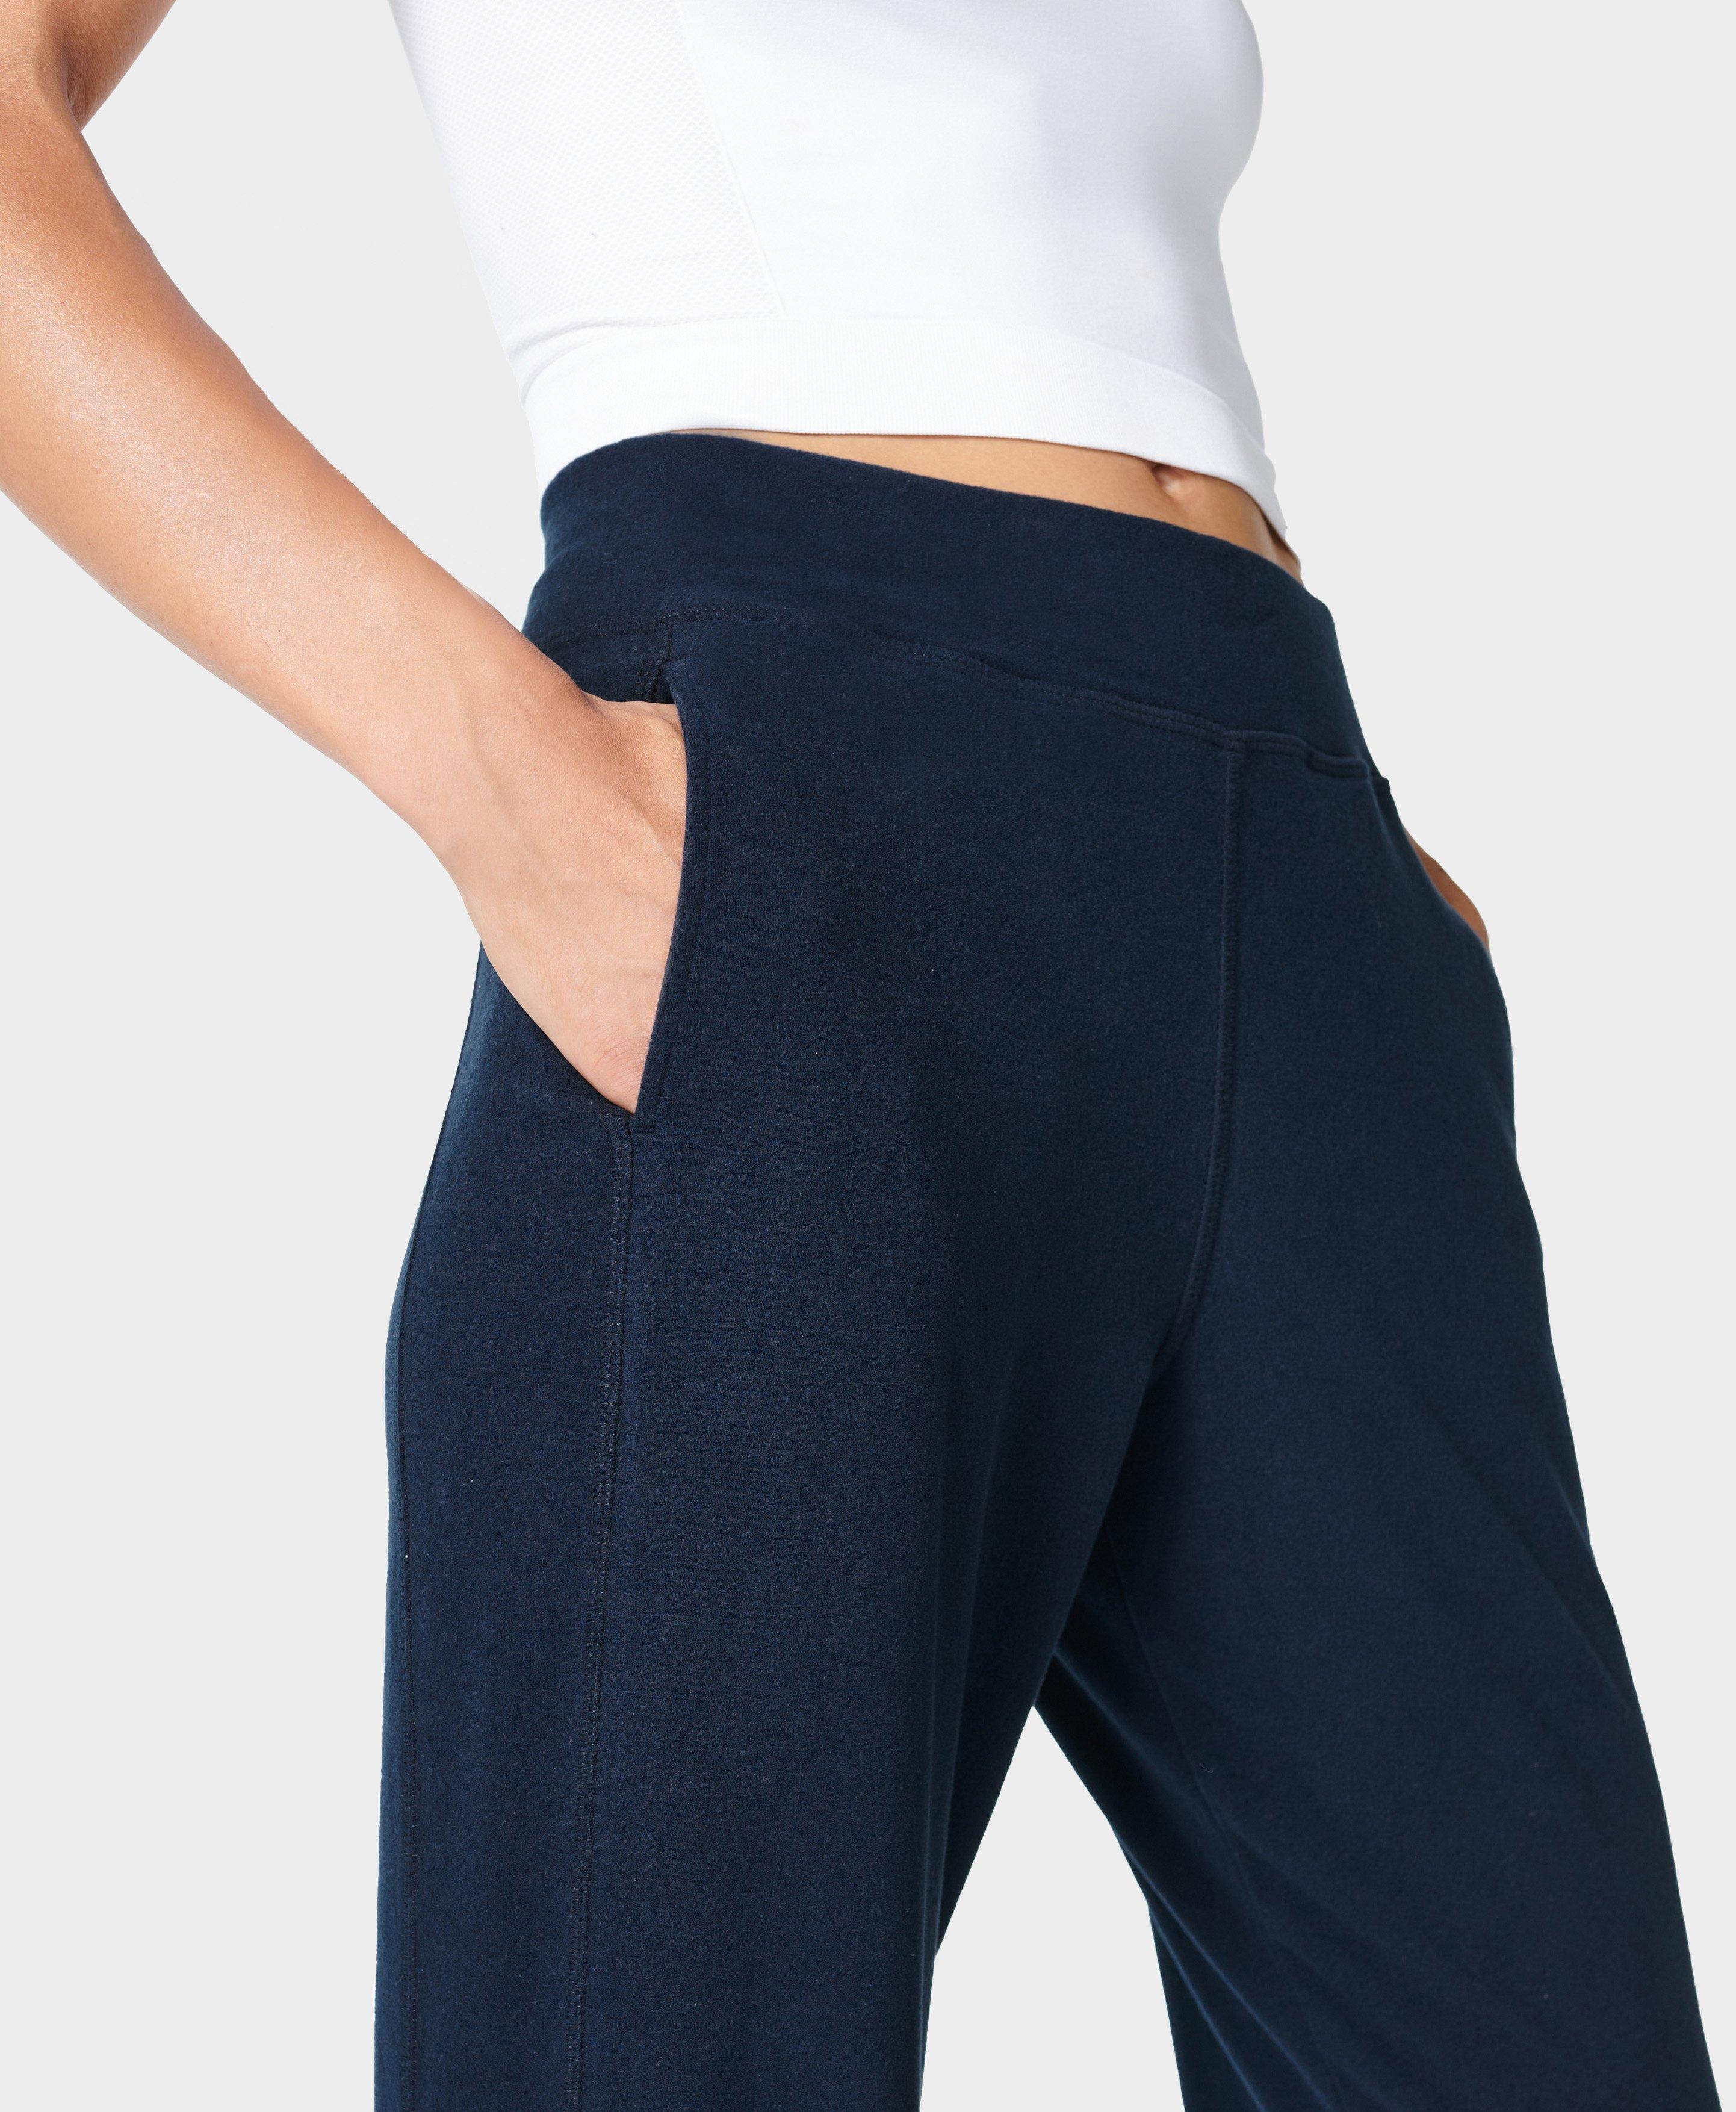 SWEATY BETTY Gary Luxe Fleece Yoga Pants